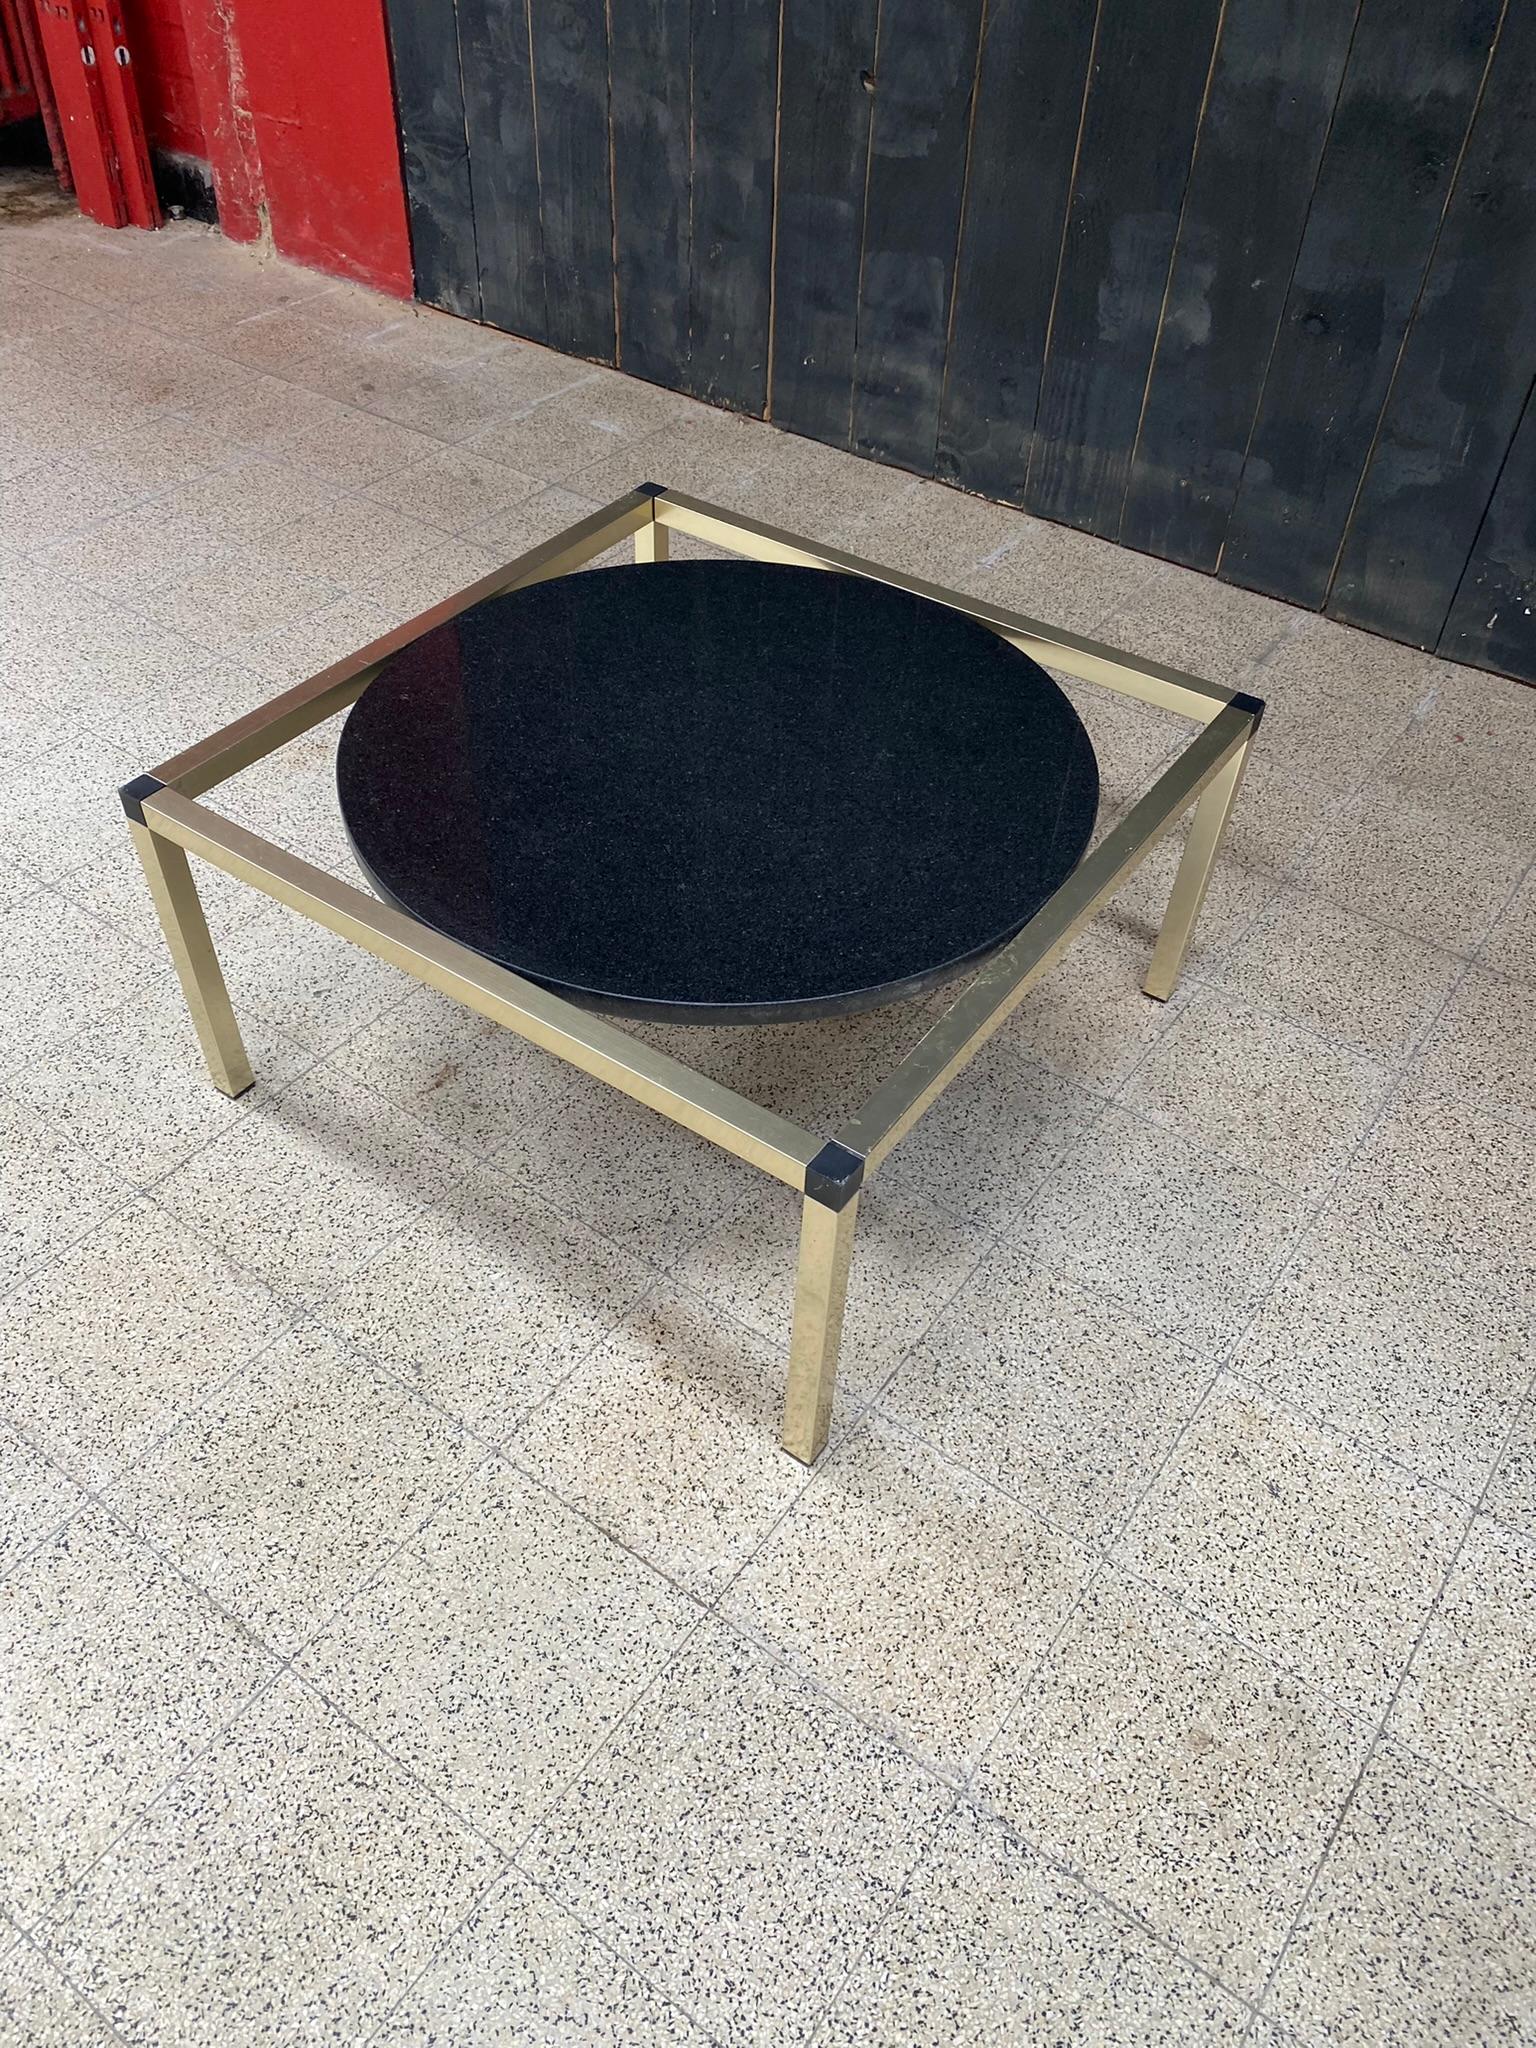 original coffee table in varnished metal, black marble top.
the tray measures 60 cm in diameter.